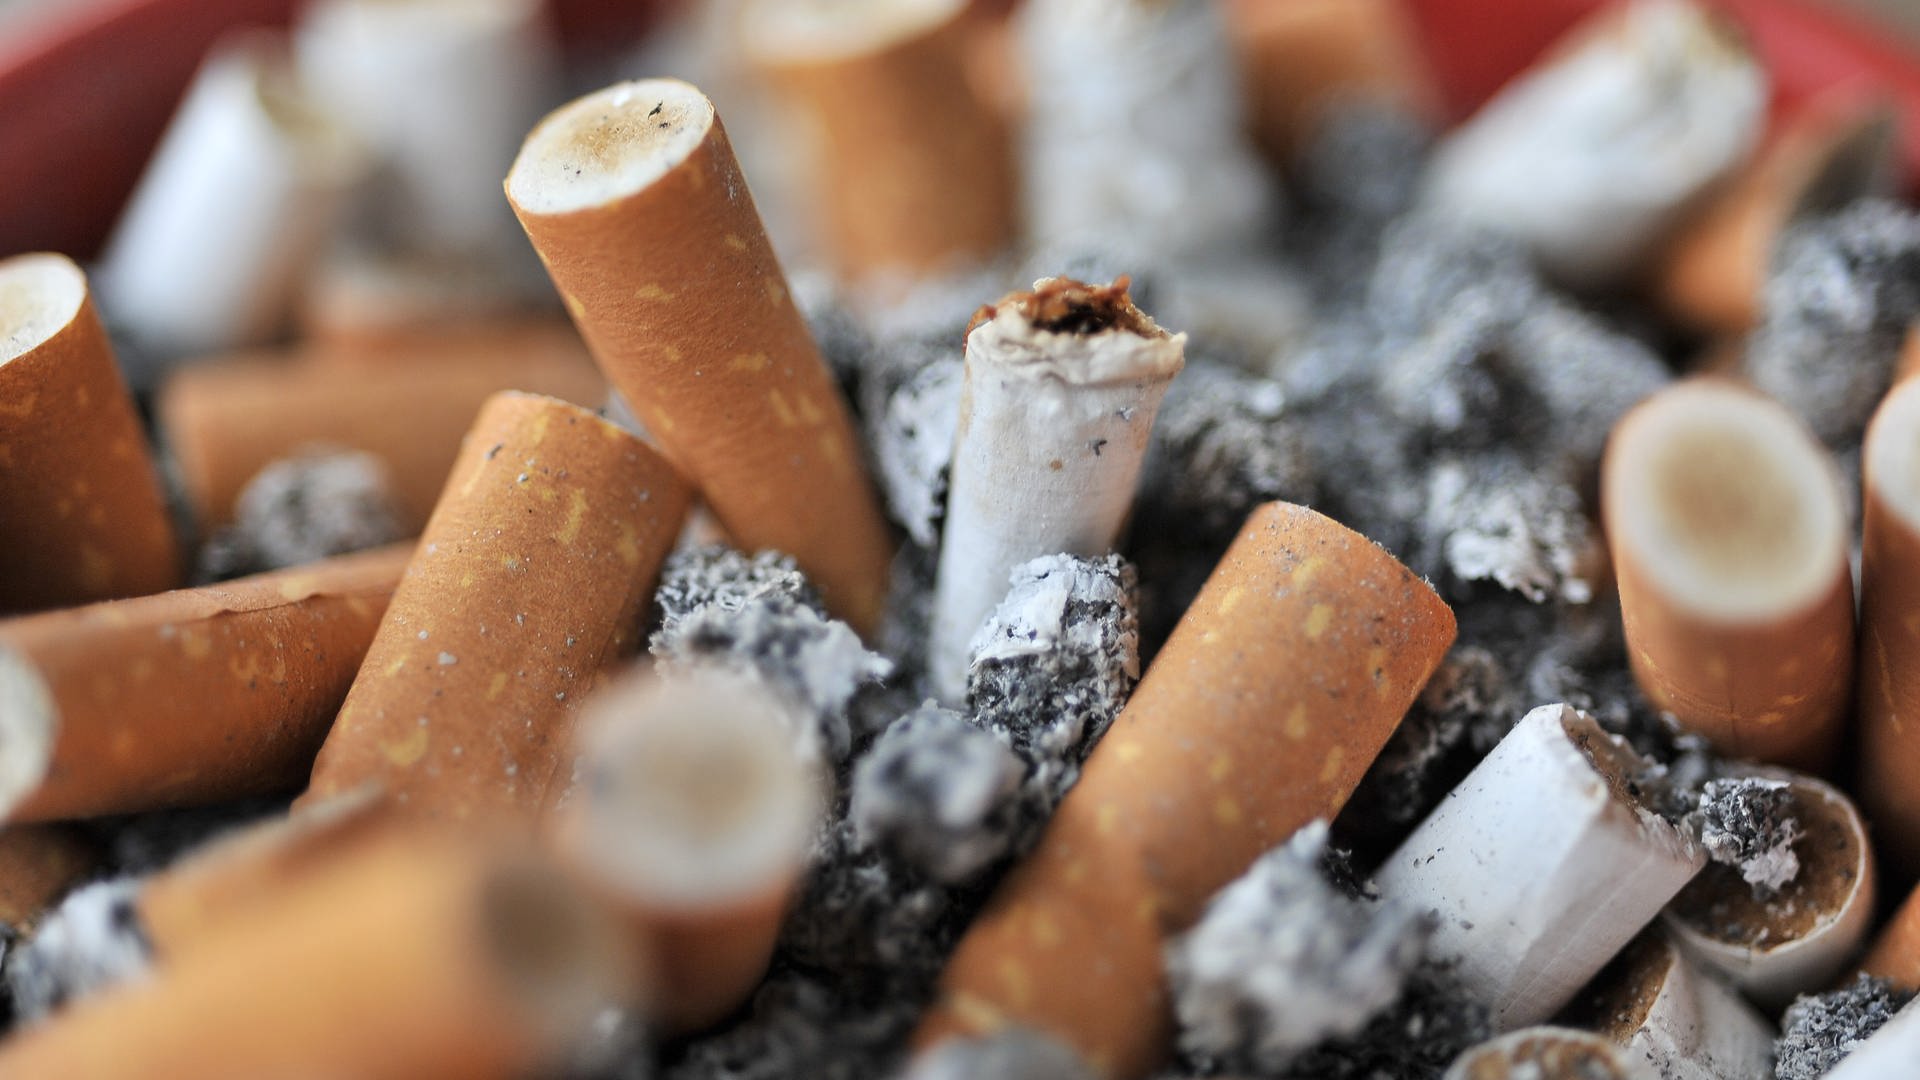 Mit dem Rauchen aufhören: Wann ist der Körper wieder auf Nichtraucherniveau?